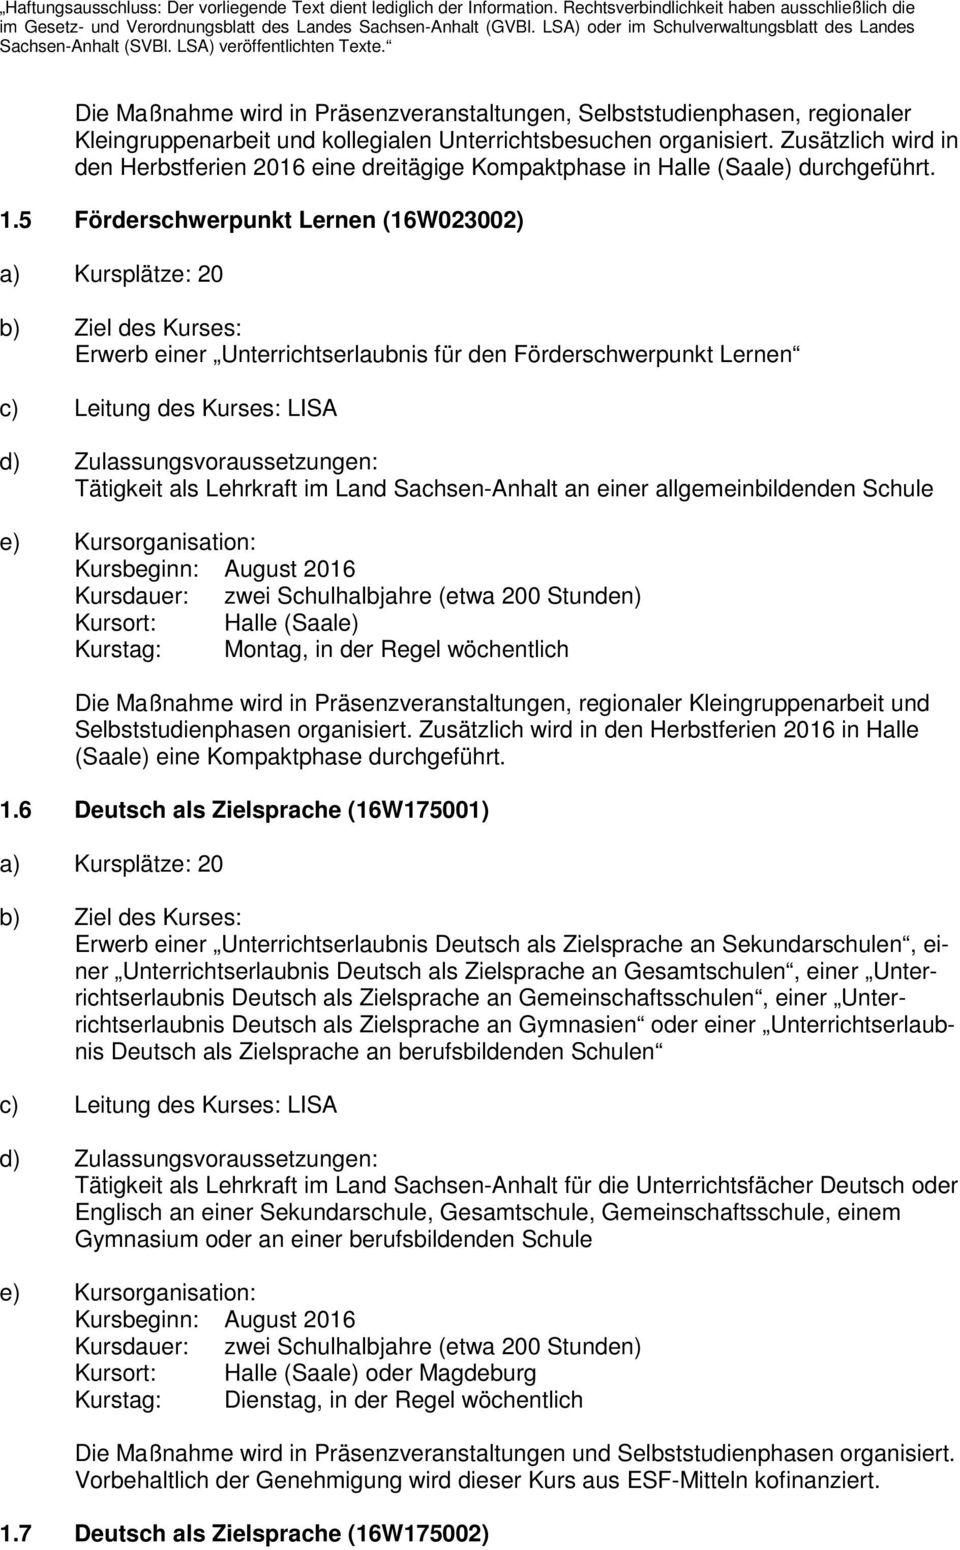 5 Förderschwerpunkt Lernen (16W023002) a) Kursplätze: 20 Erwerb einer Unterrichtserlaubnis für den Förderschwerpunkt Lernen Tätigkeit als Lehrkraft im Land Sachsen-Anhalt an einer allgemeinbildenden